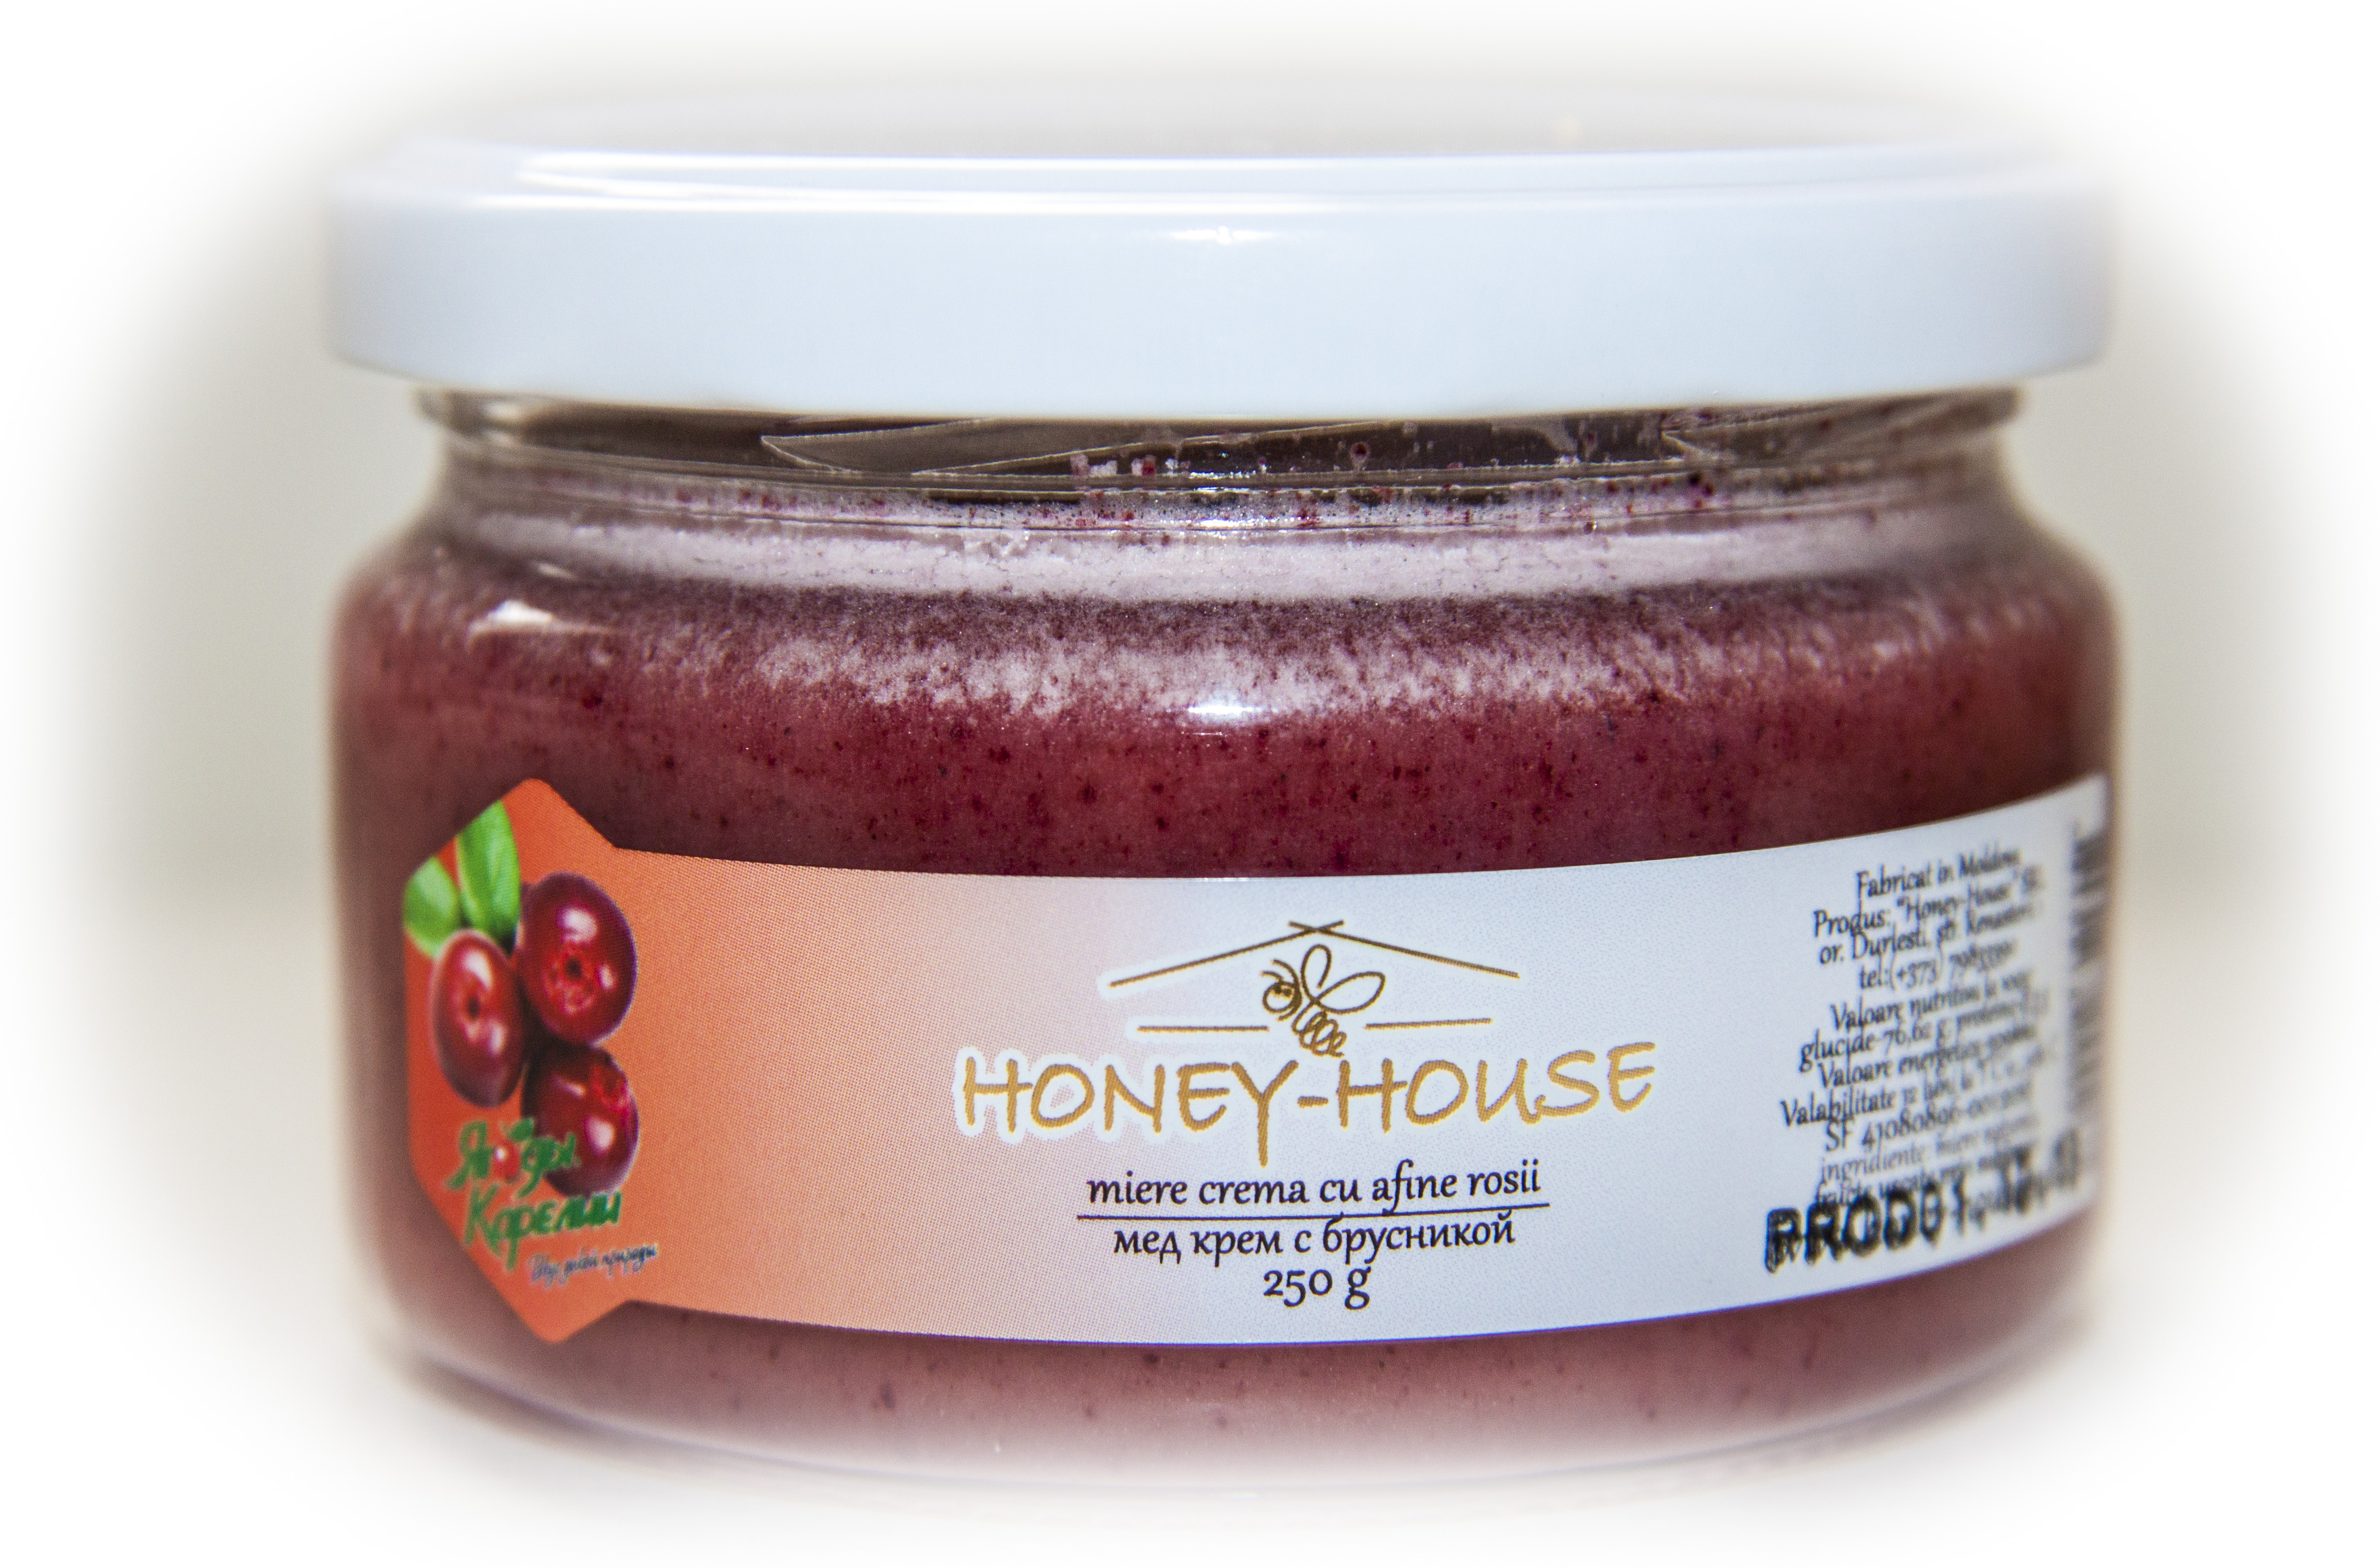 Honey cream with lingonberry